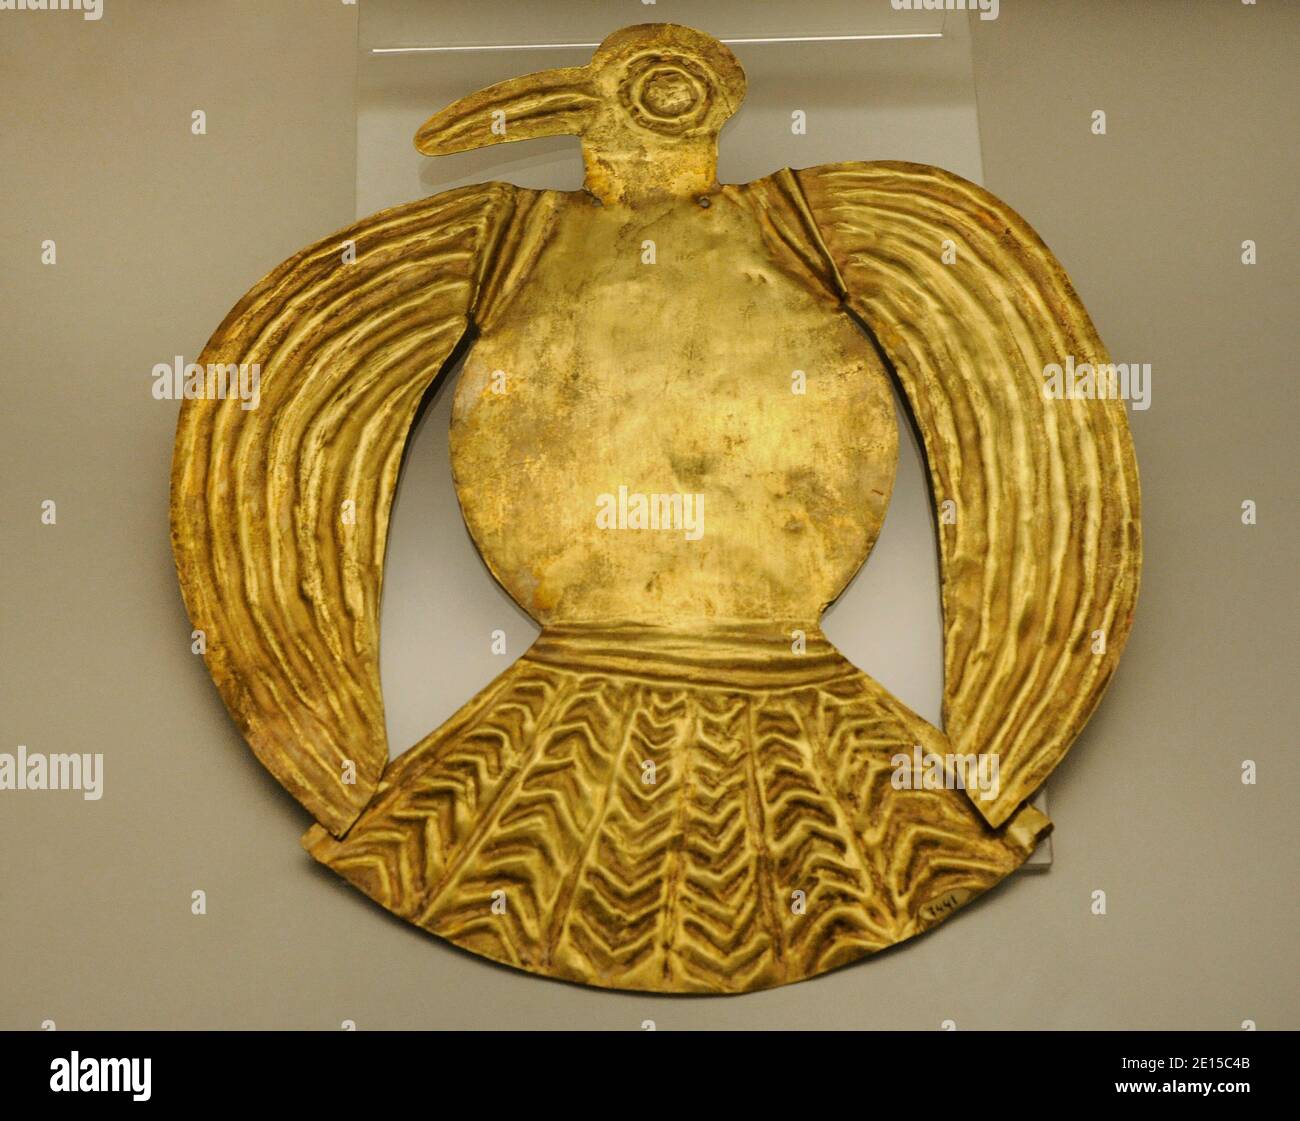 Feuille d'or en forme d'oiseau. Culture inca (1400-1533 AD). Pérou. Musée des Amériques. Madrid, Espagne. Banque D'Images